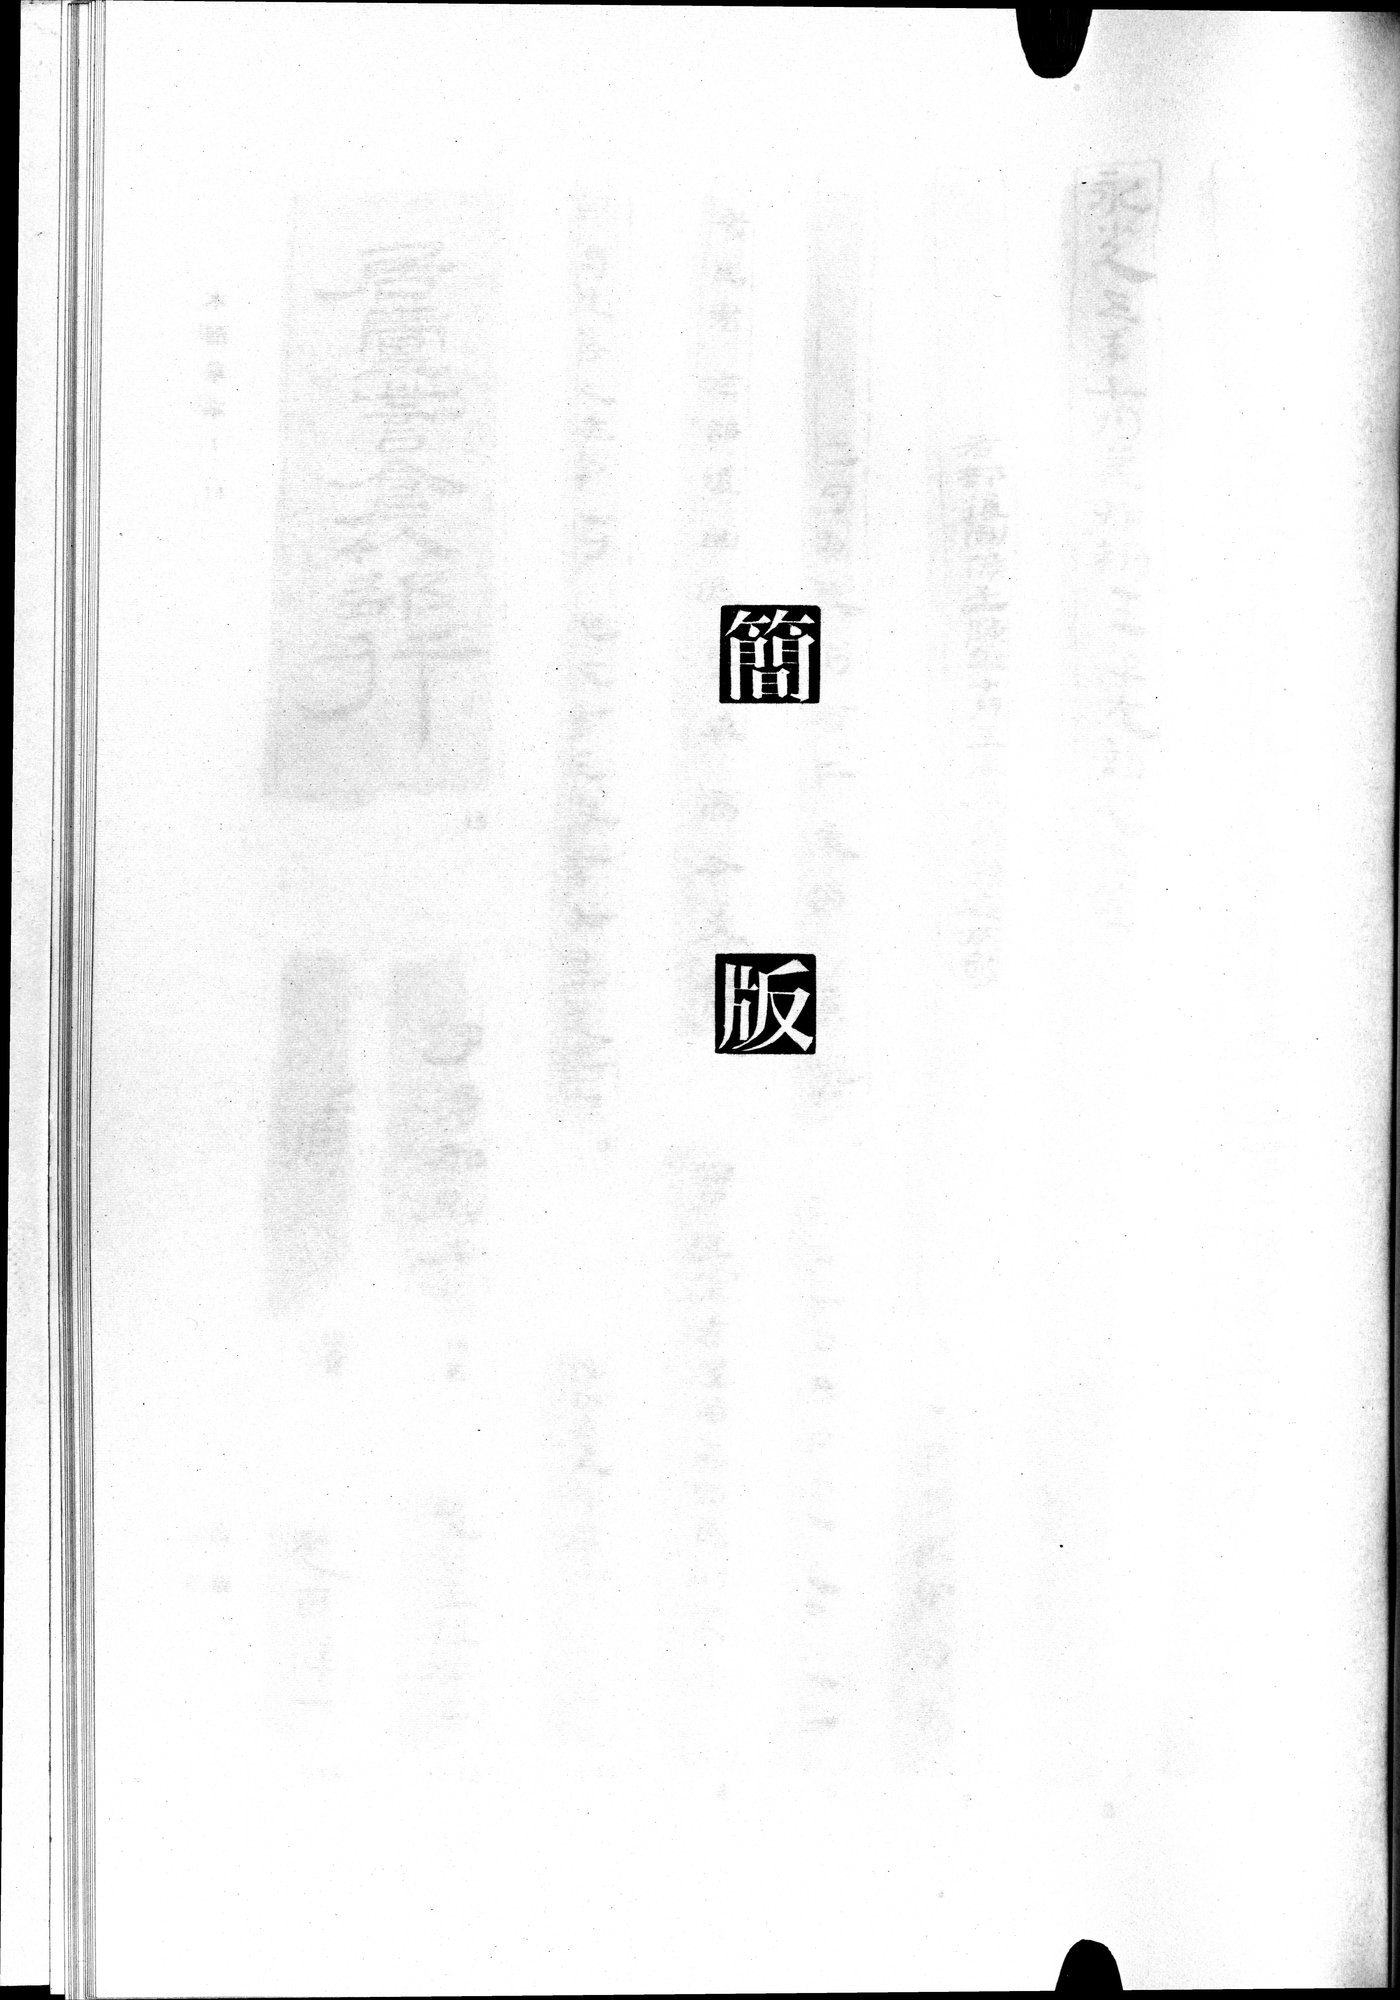 羅布淖爾考古記 : vol.1 / Page 353 (Grayscale High Resolution Image)